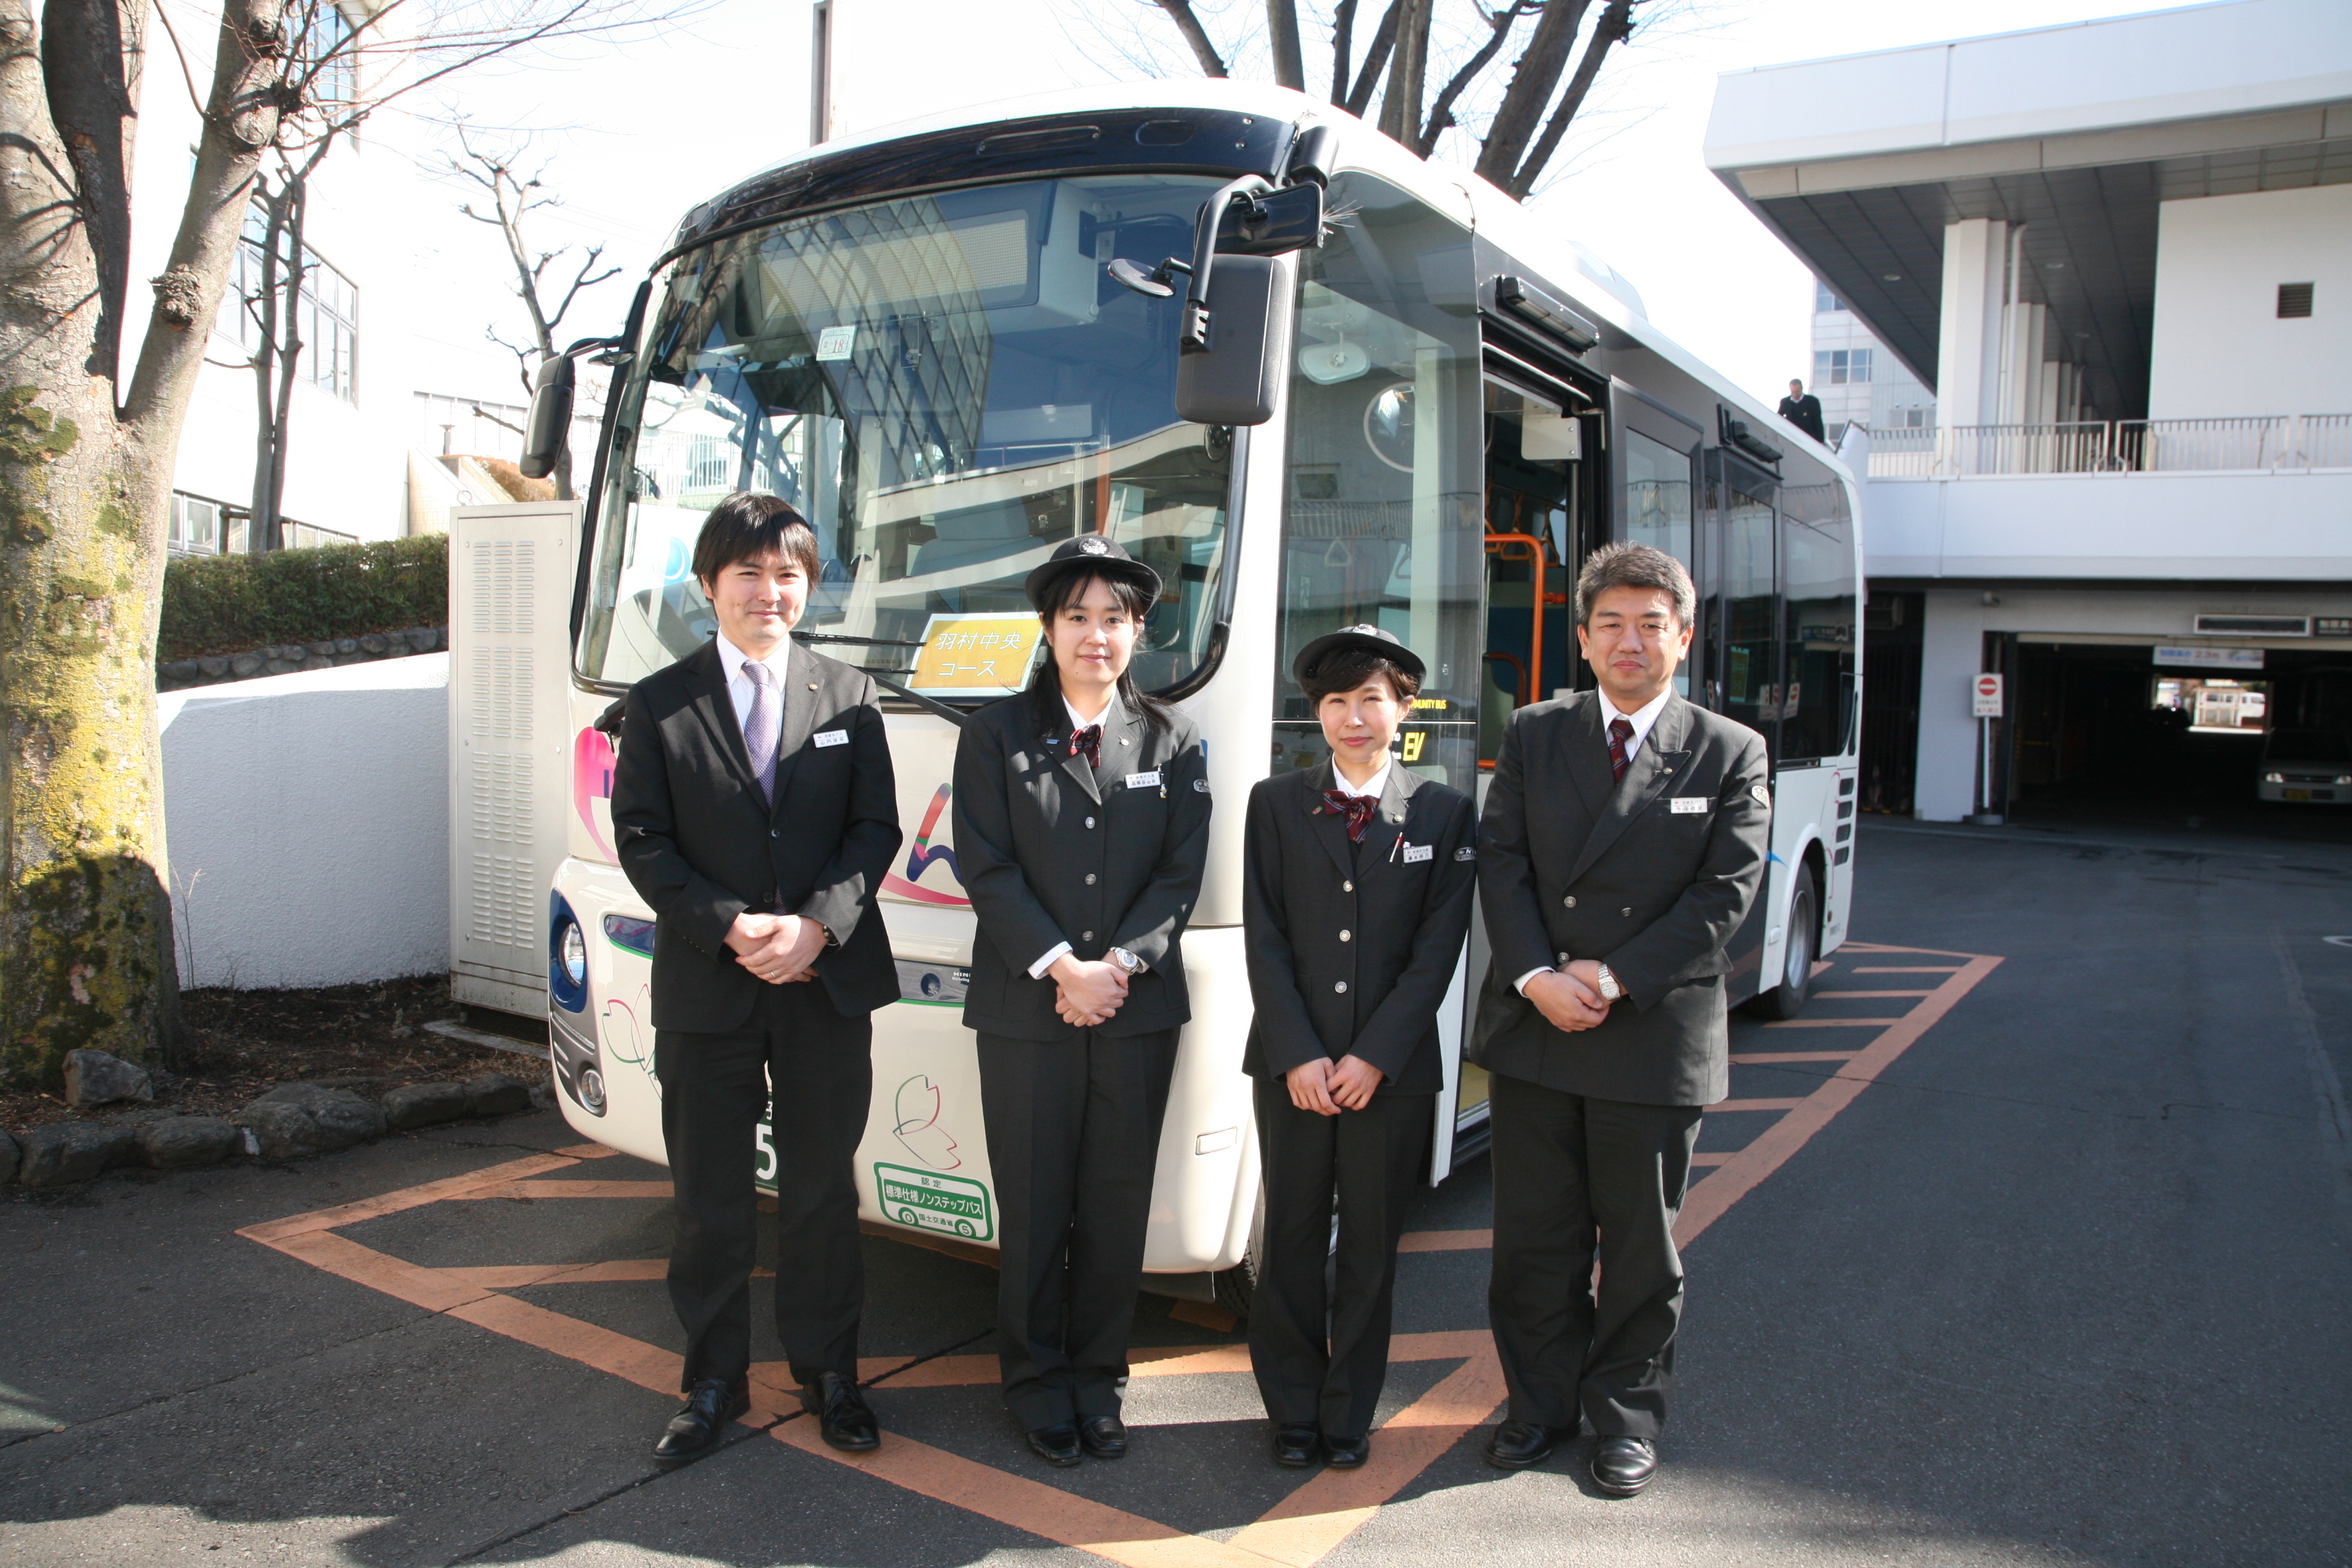 インタビューした西東京バス株式会社の皆さん